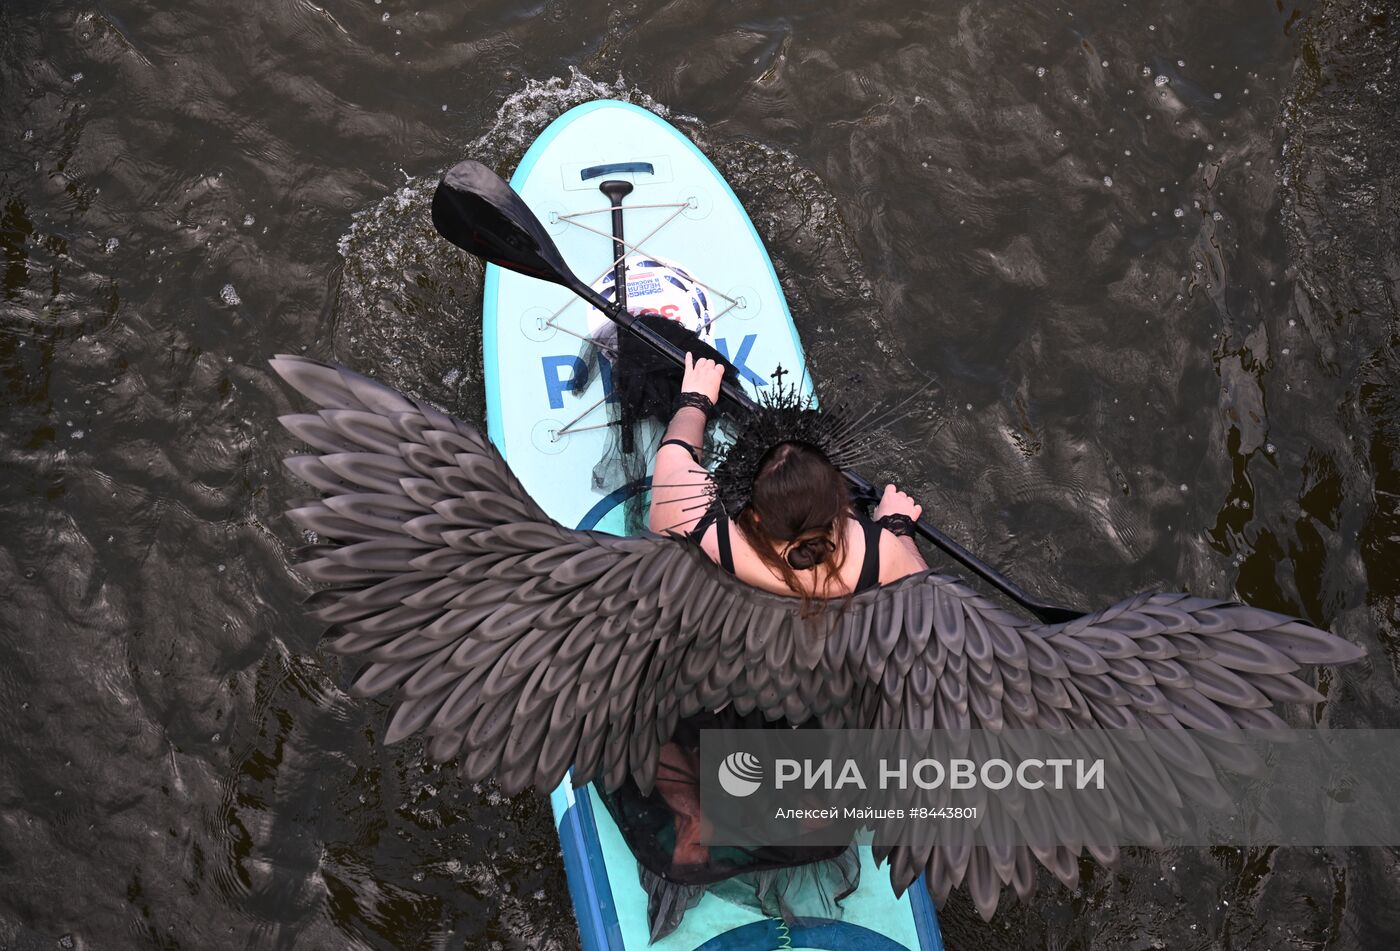 Костюмированный  заплыв на SUP-бордах в рамках фестиваля "Рыбная неделя"  